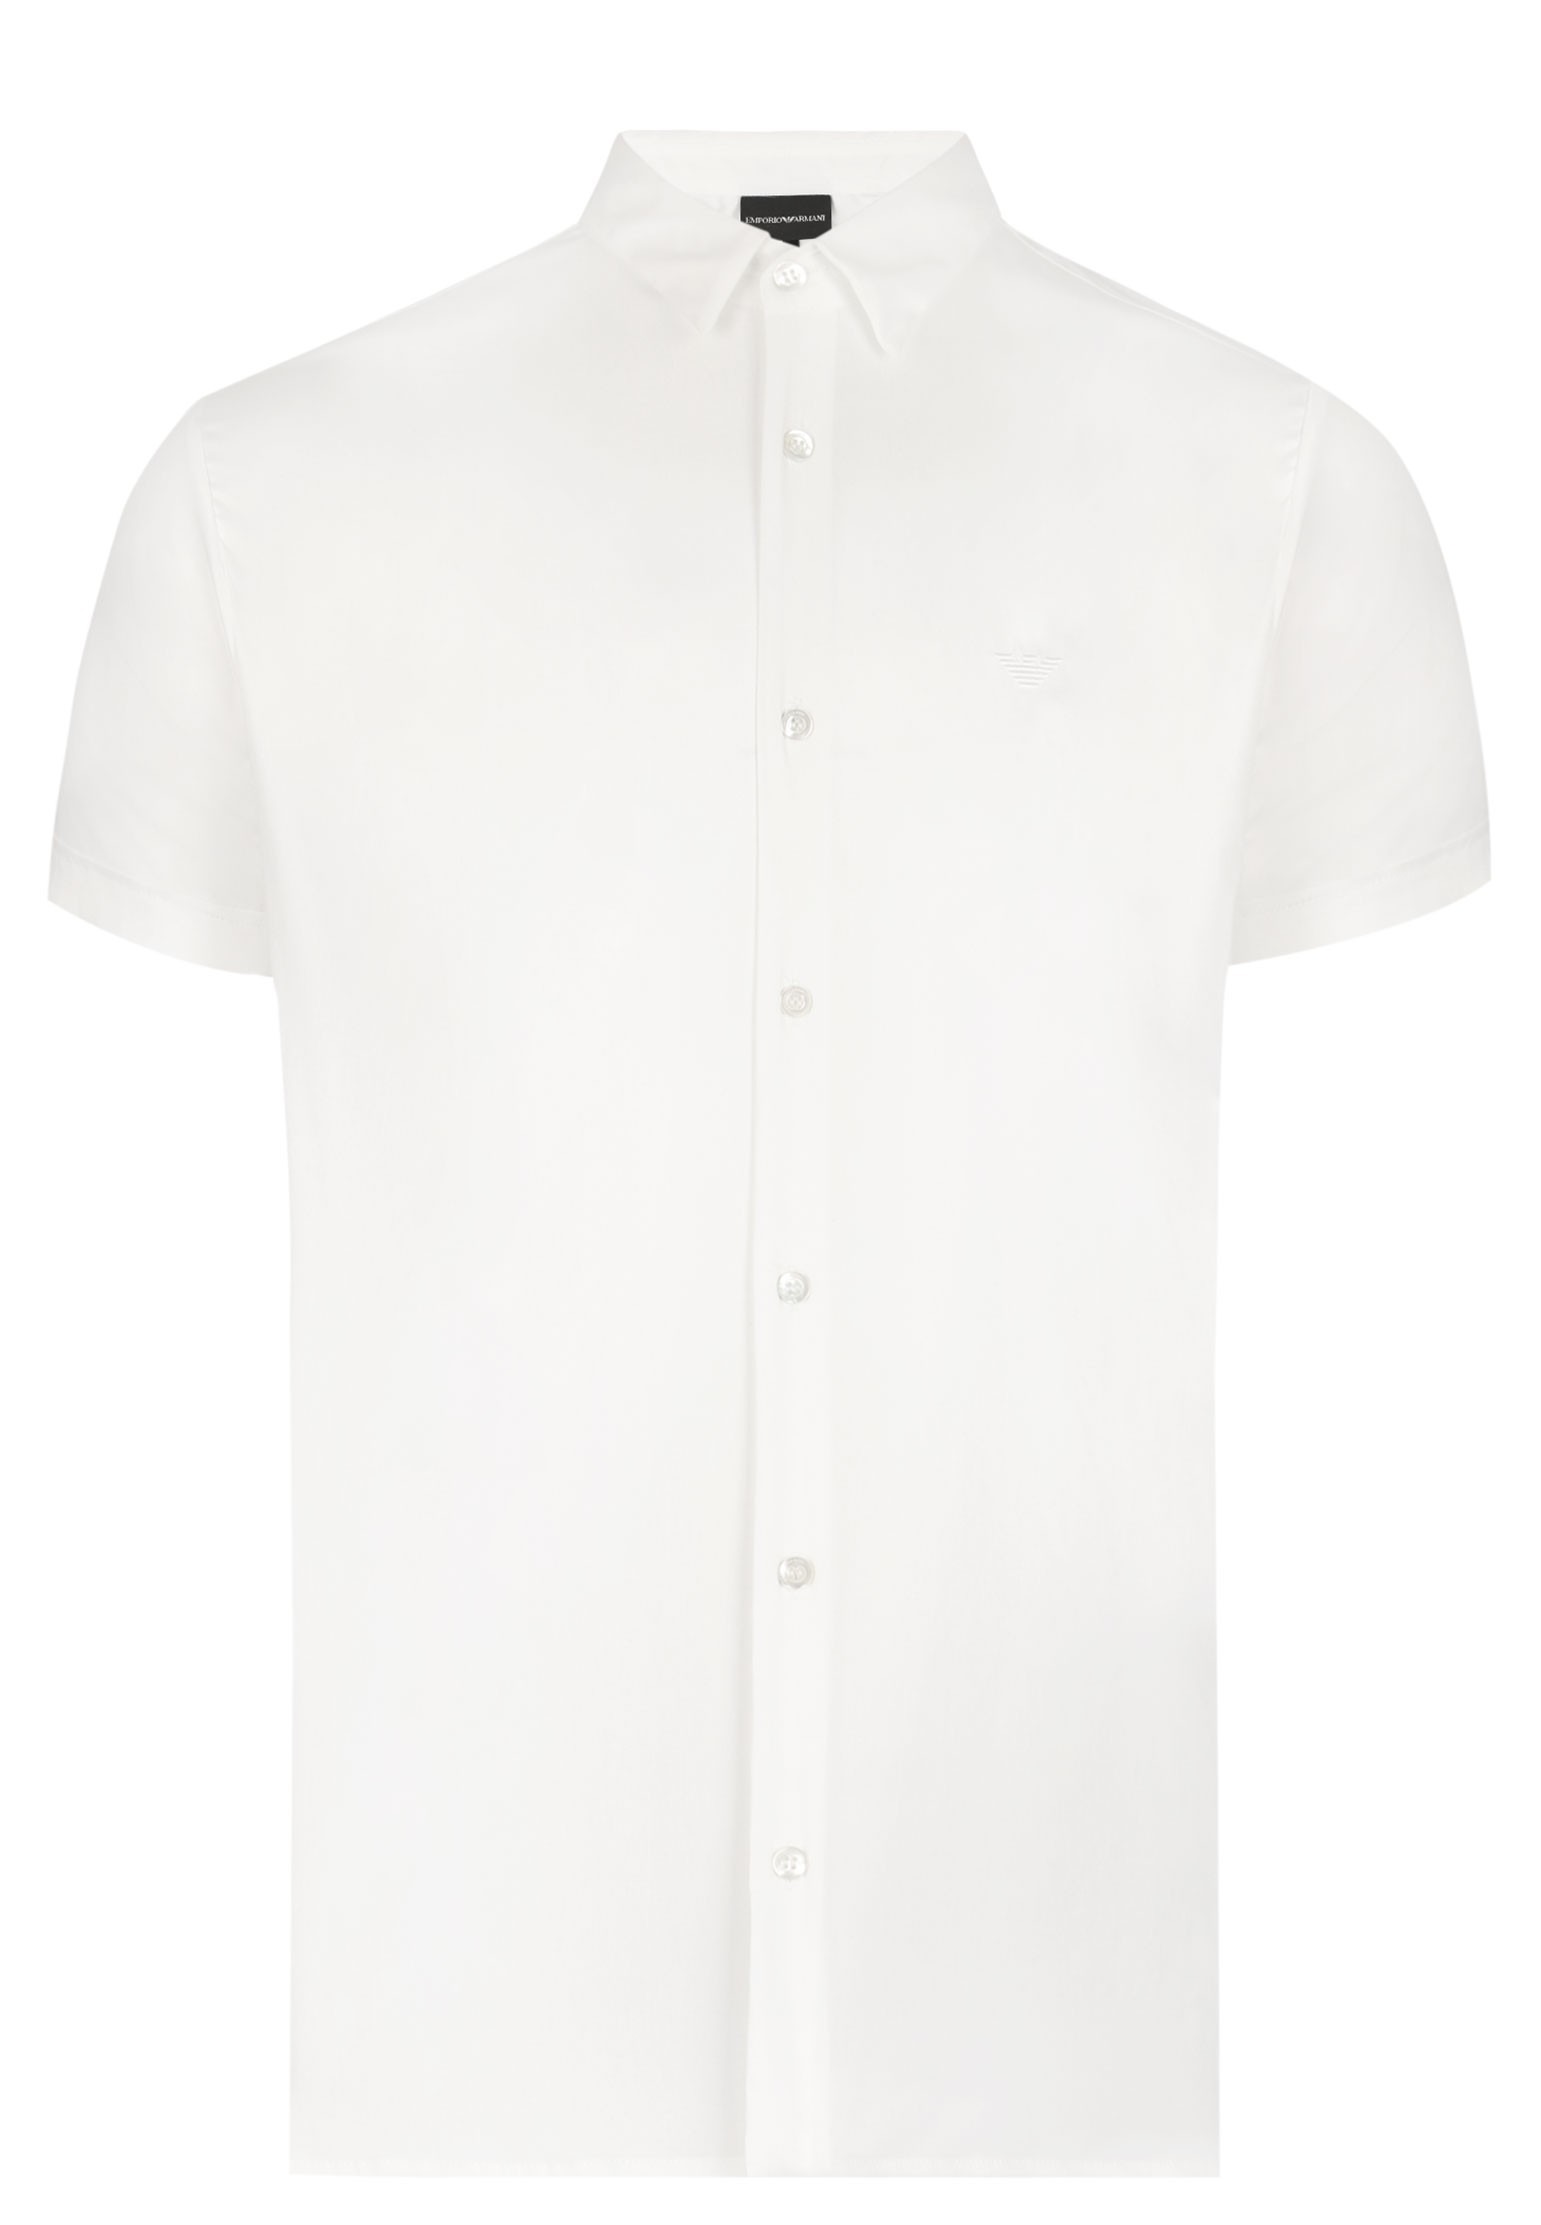 Рубашка мужская Emporio Armani 126902 белая L